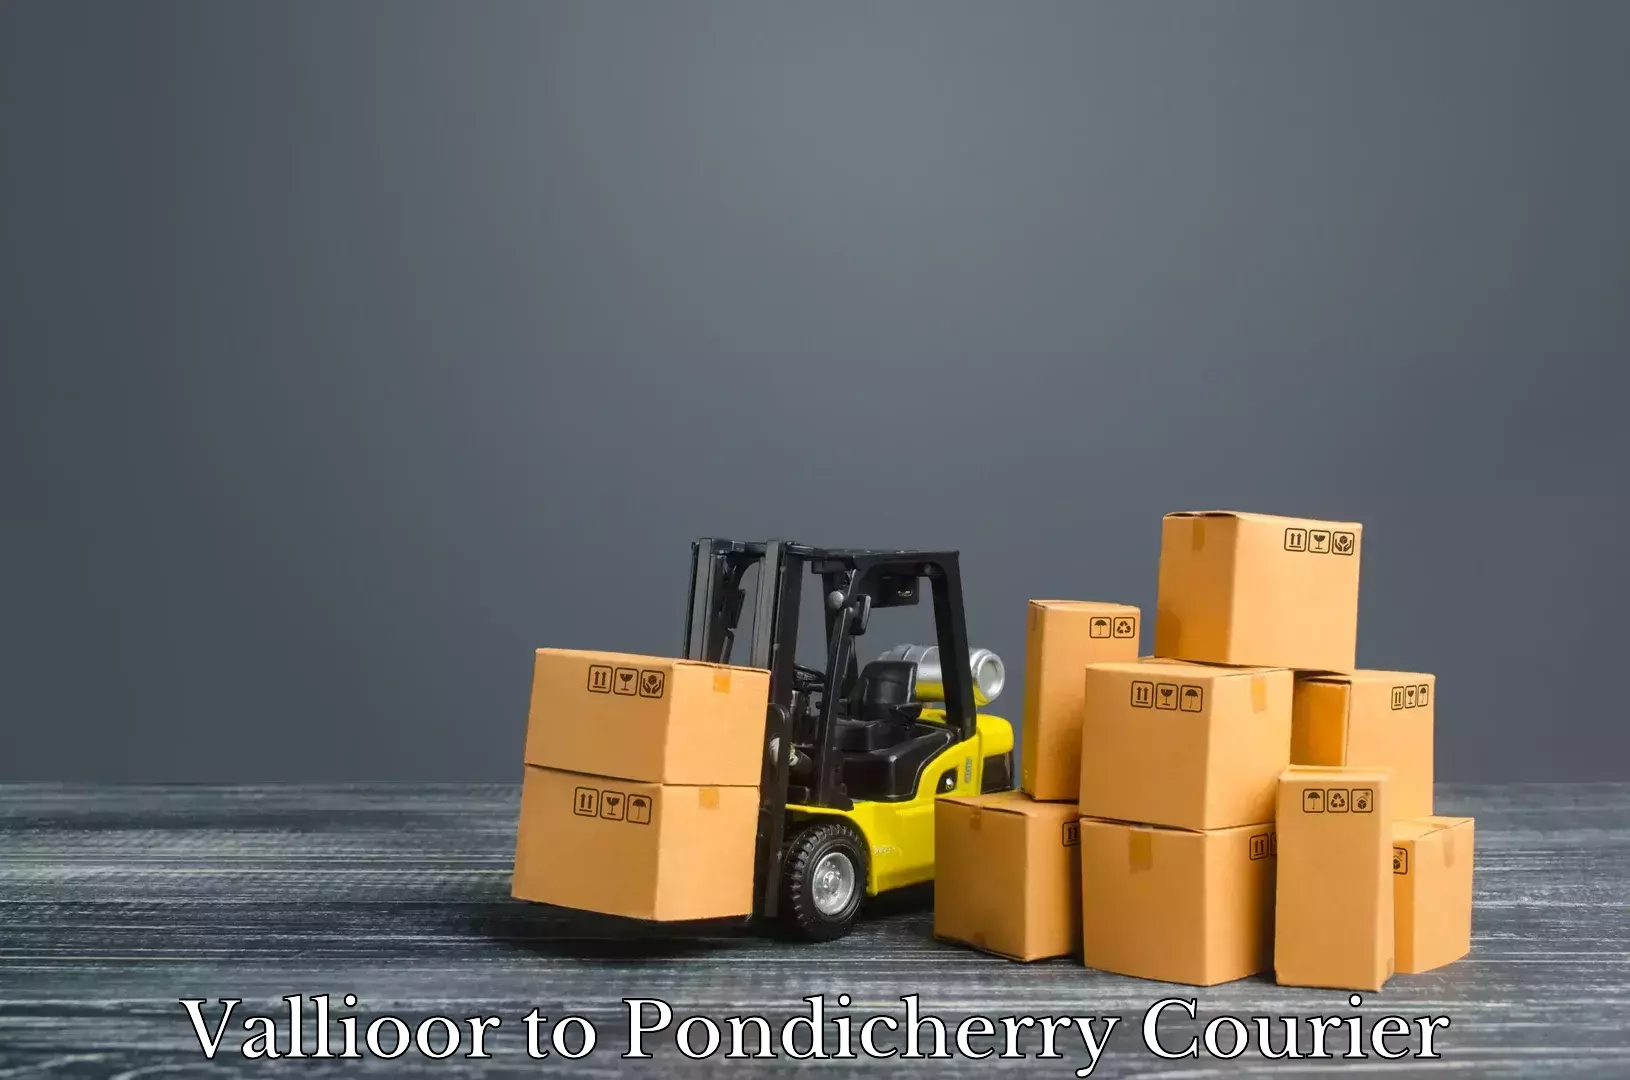 Luggage delivery news Vallioor to Pondicherry